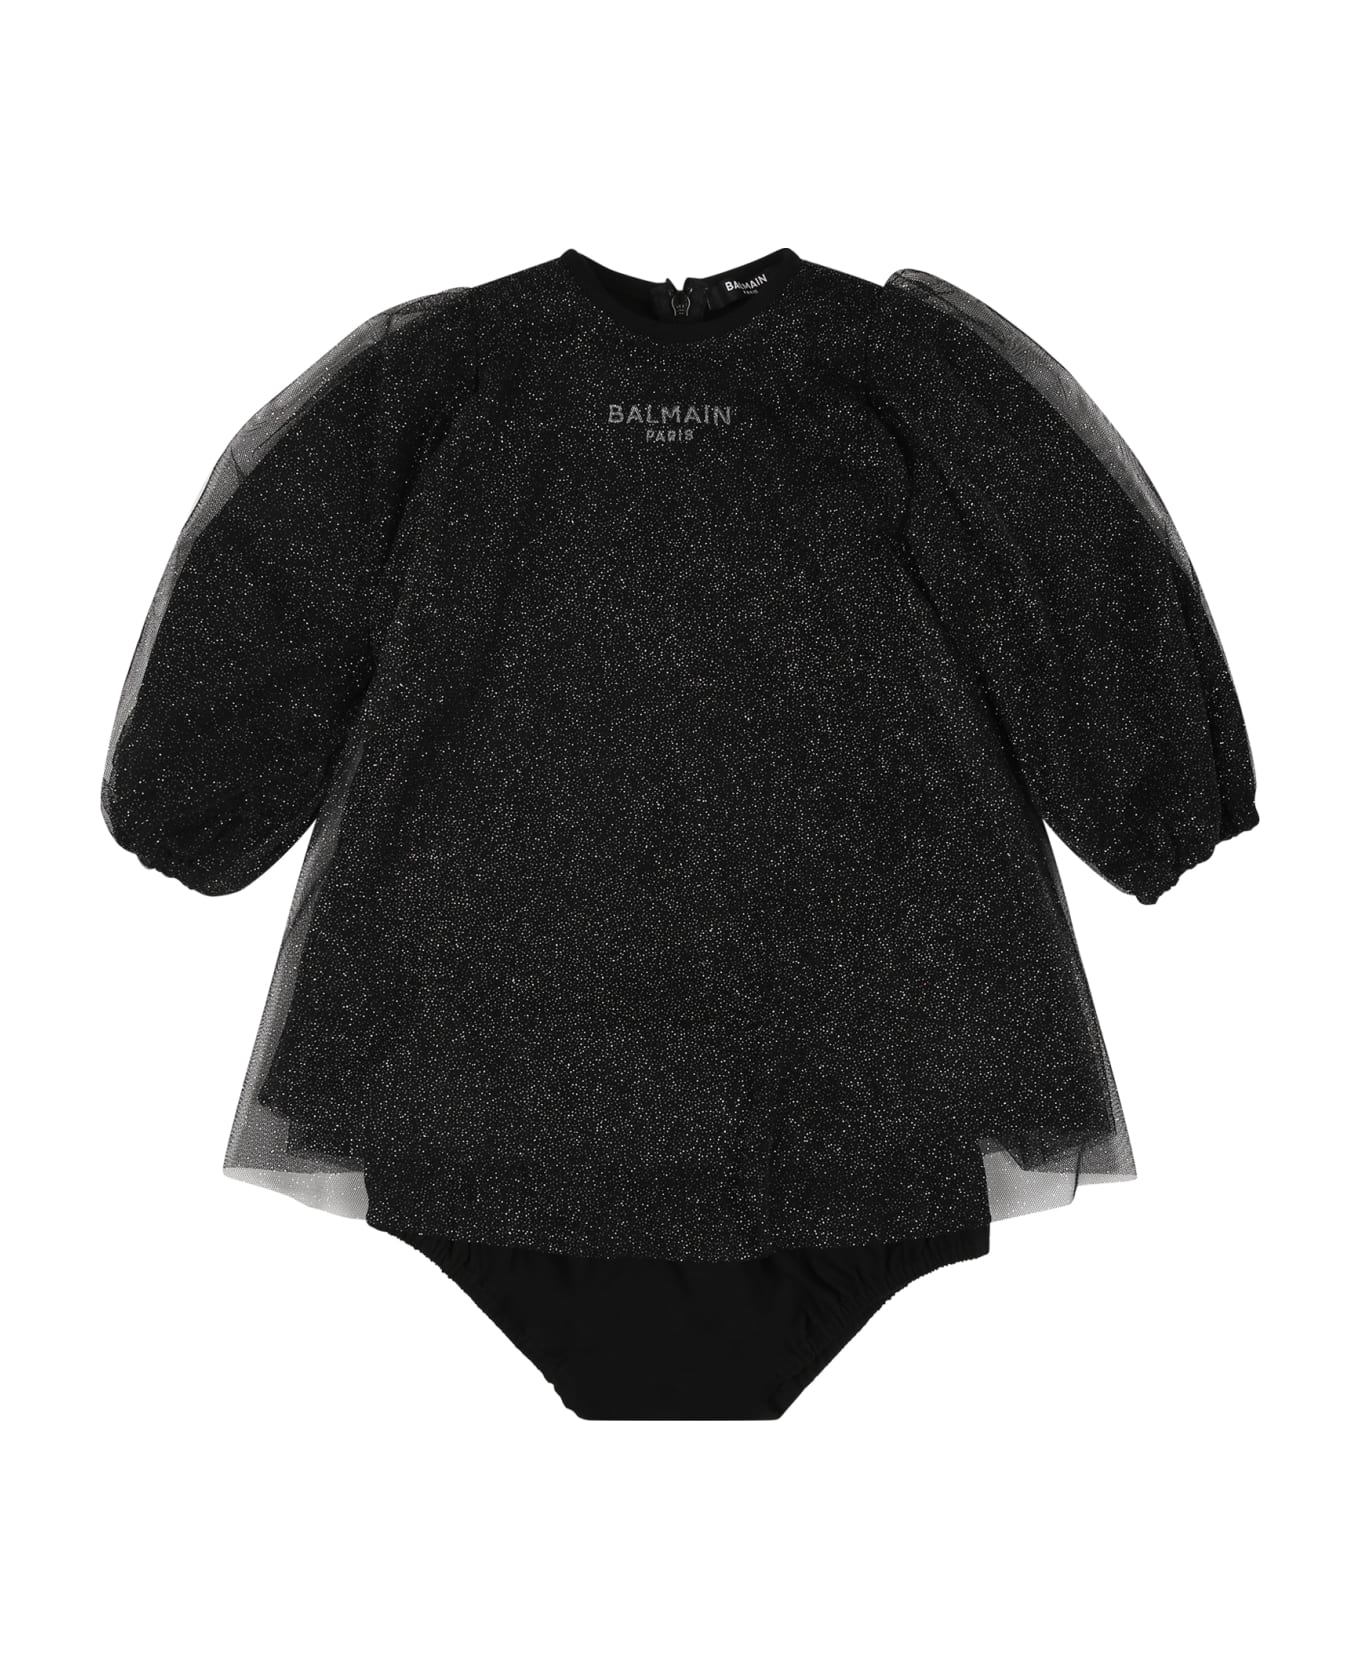 Balmain Black Dress For Baby Girl With Logo - Black ウェア